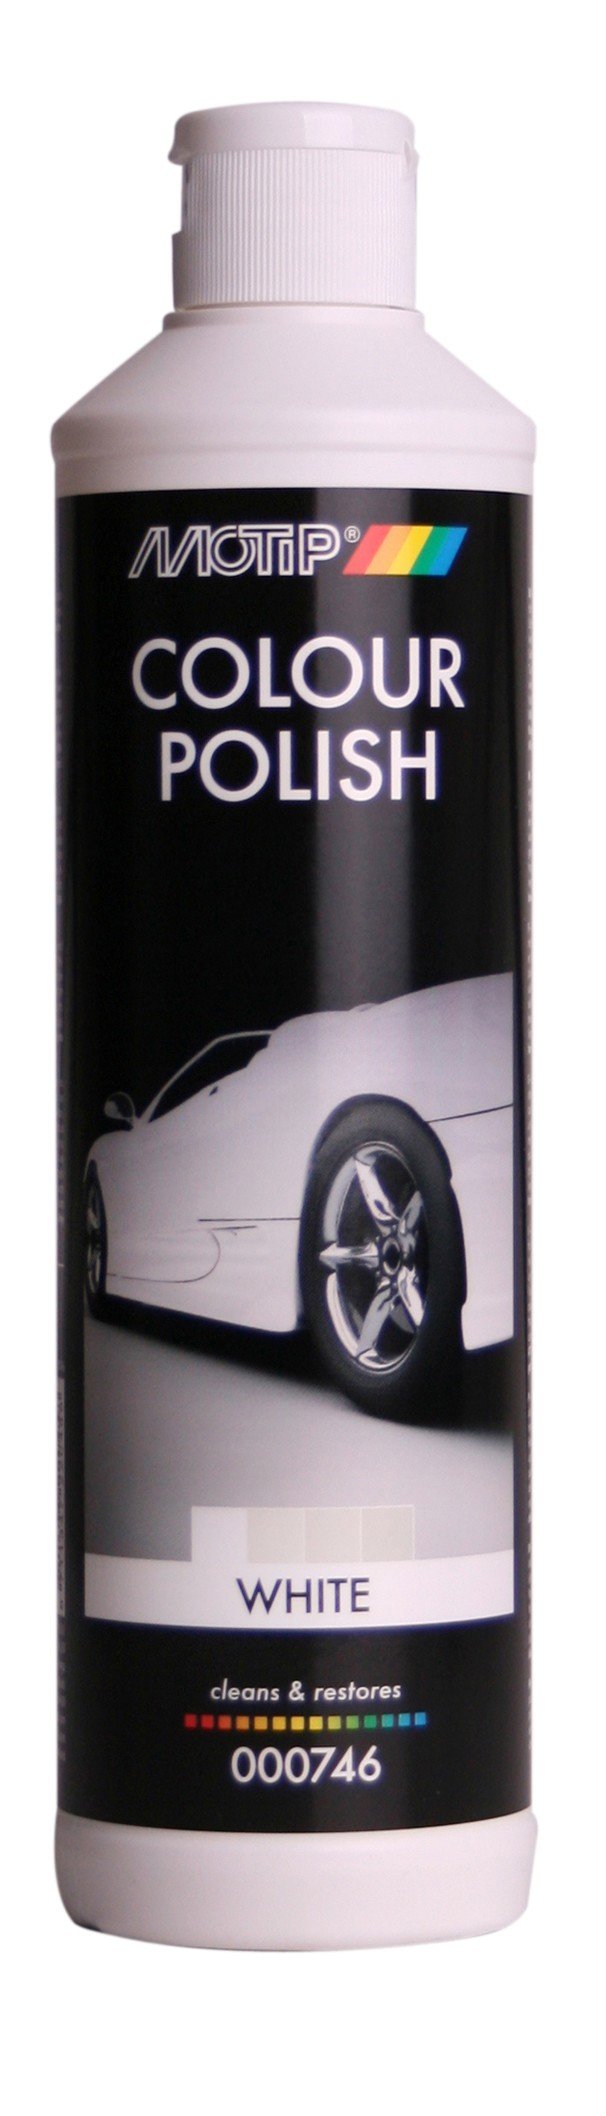 Motip Color Politur Colour Polish Weiss White Lackpflege Auto 000746 500Ml von Motip